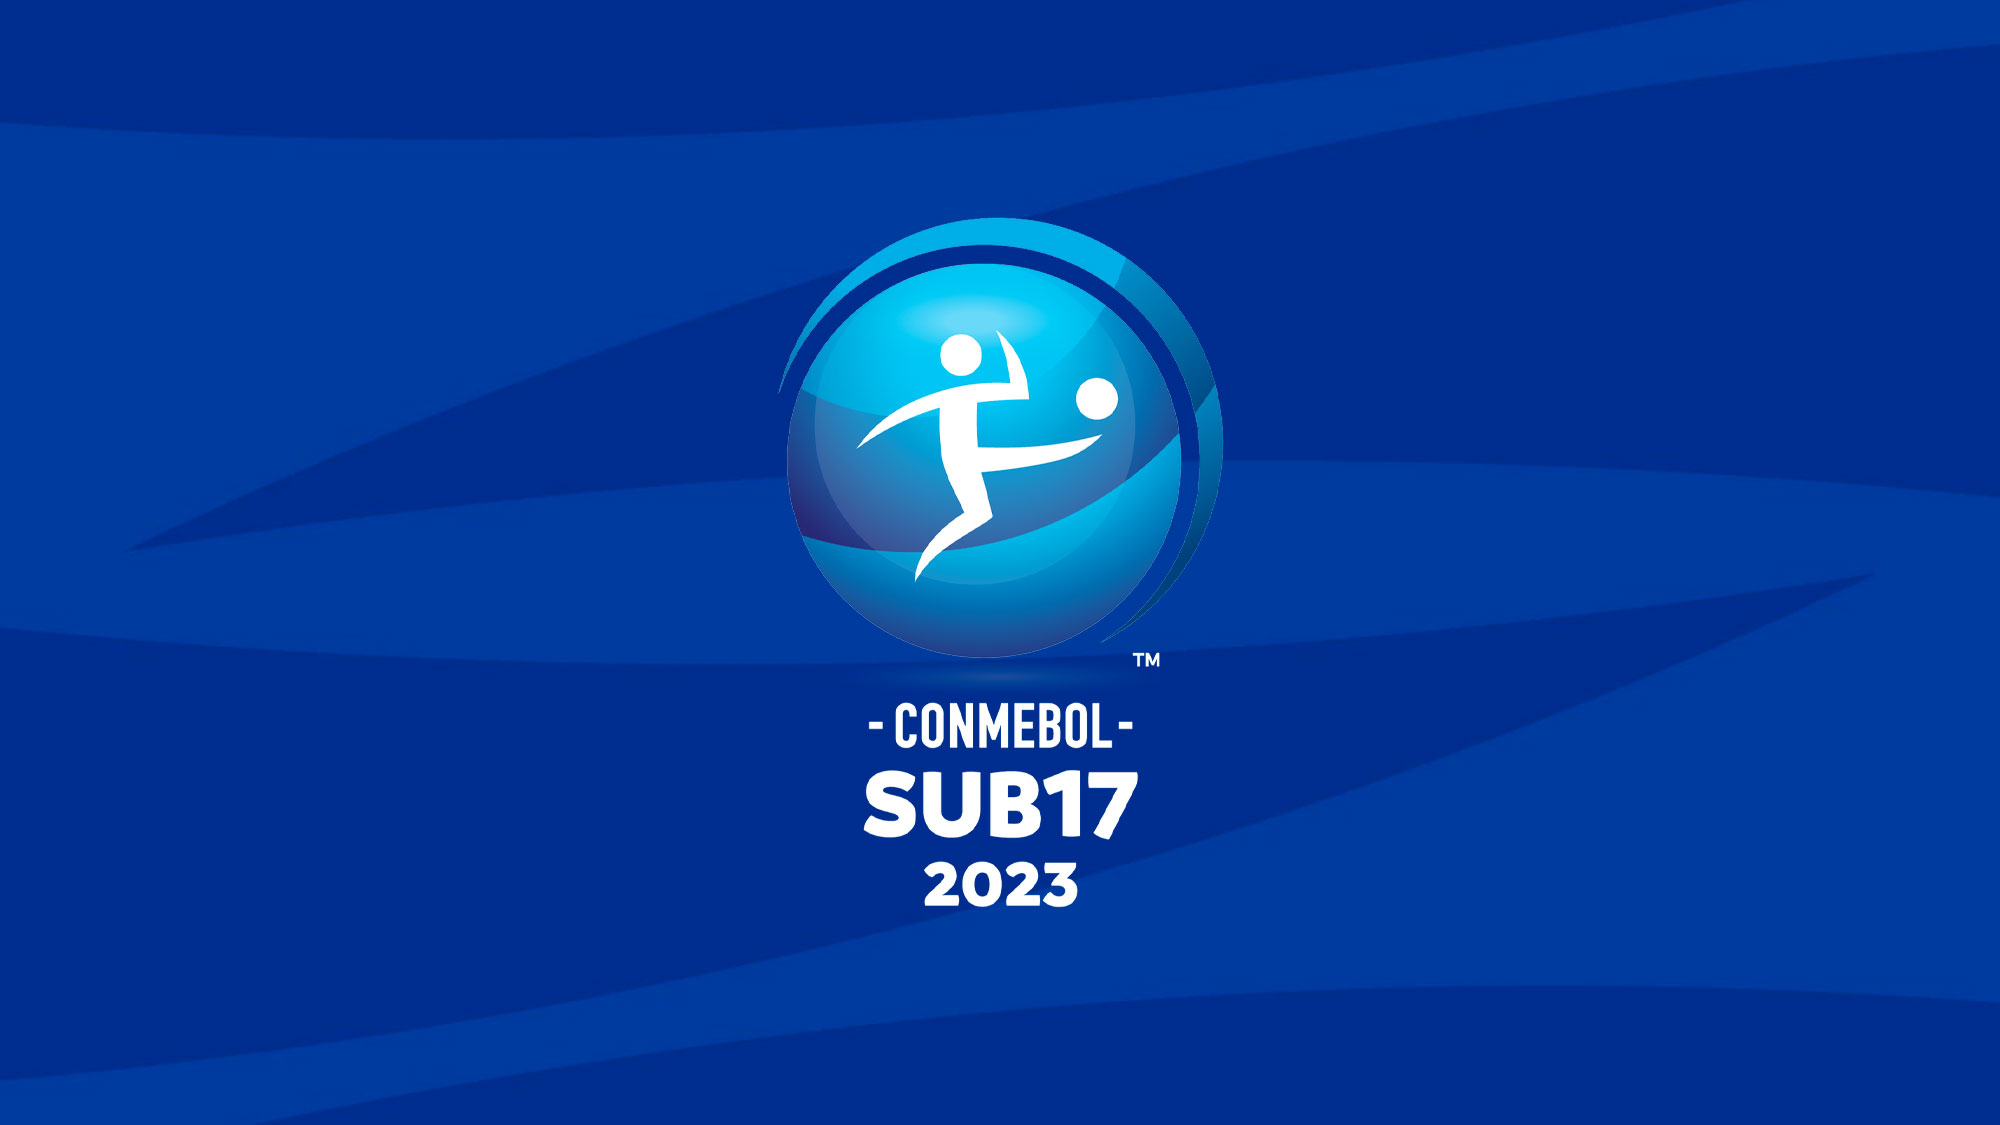 La CONMEBOL Sub17 2023 conocerá a sus grupos CONMEBOL